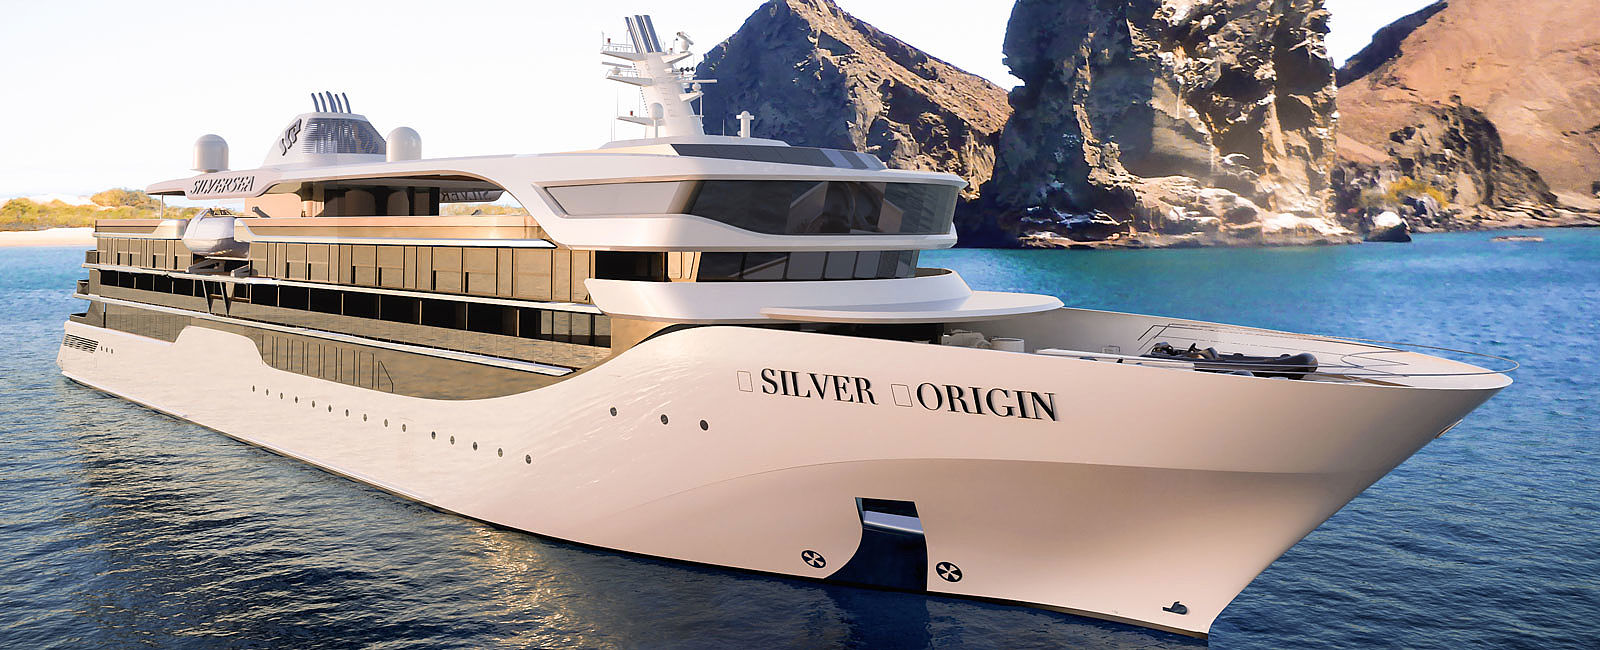 KREUZFAHRT NEWS
 Silver Origin: Silversea enthüllt das eleganteste Schiff aller Zeiten 
